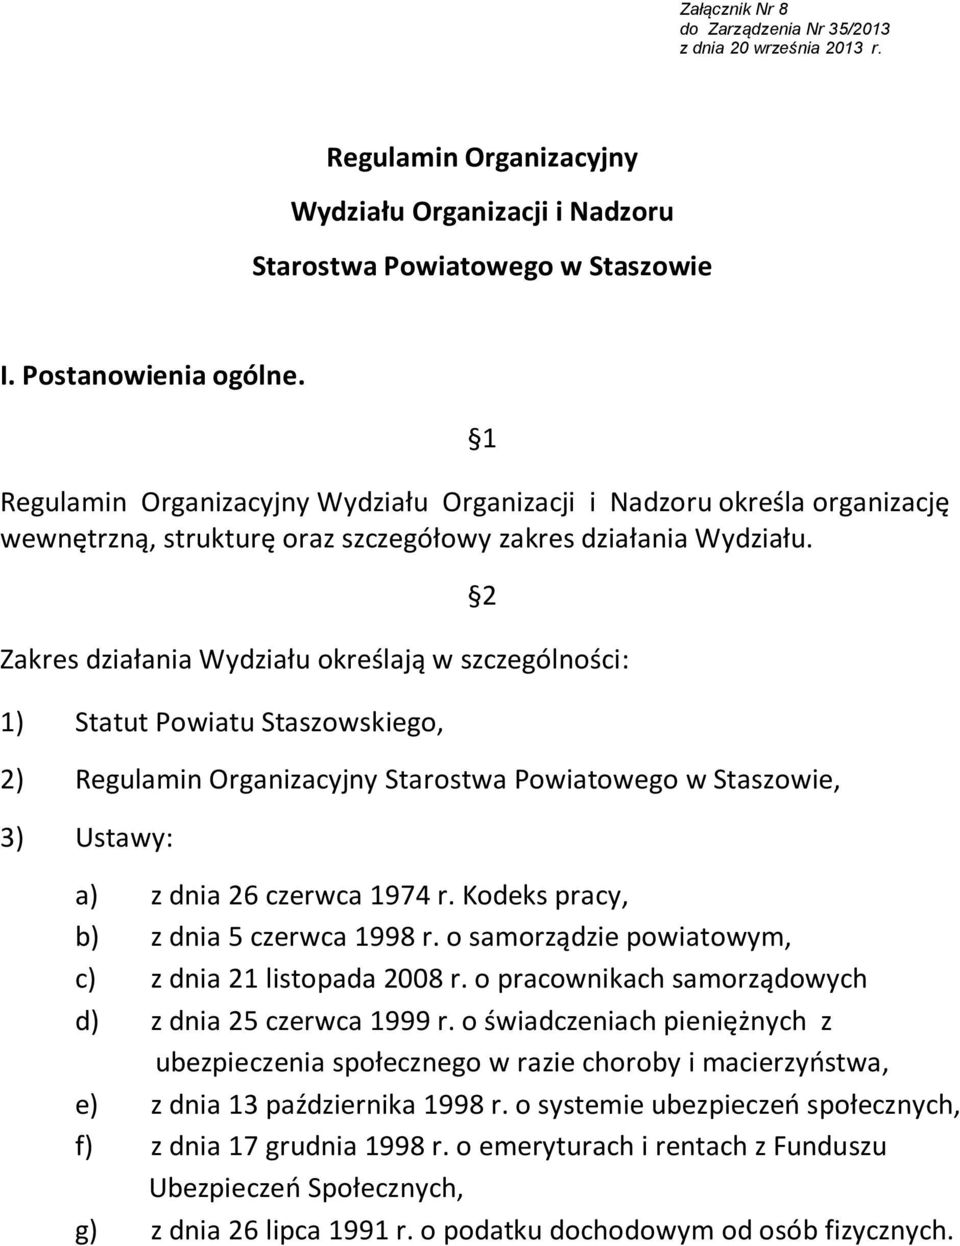 Zakres działania ydziału określają w szczególności: 1) Statut Powiatu Staszowskiego, 2) Regulamin Organizacyjny Starostwa Powiatowego w Staszowie, 3) Ustawy: 2 a) z dnia 26 czerwca 1974 r.